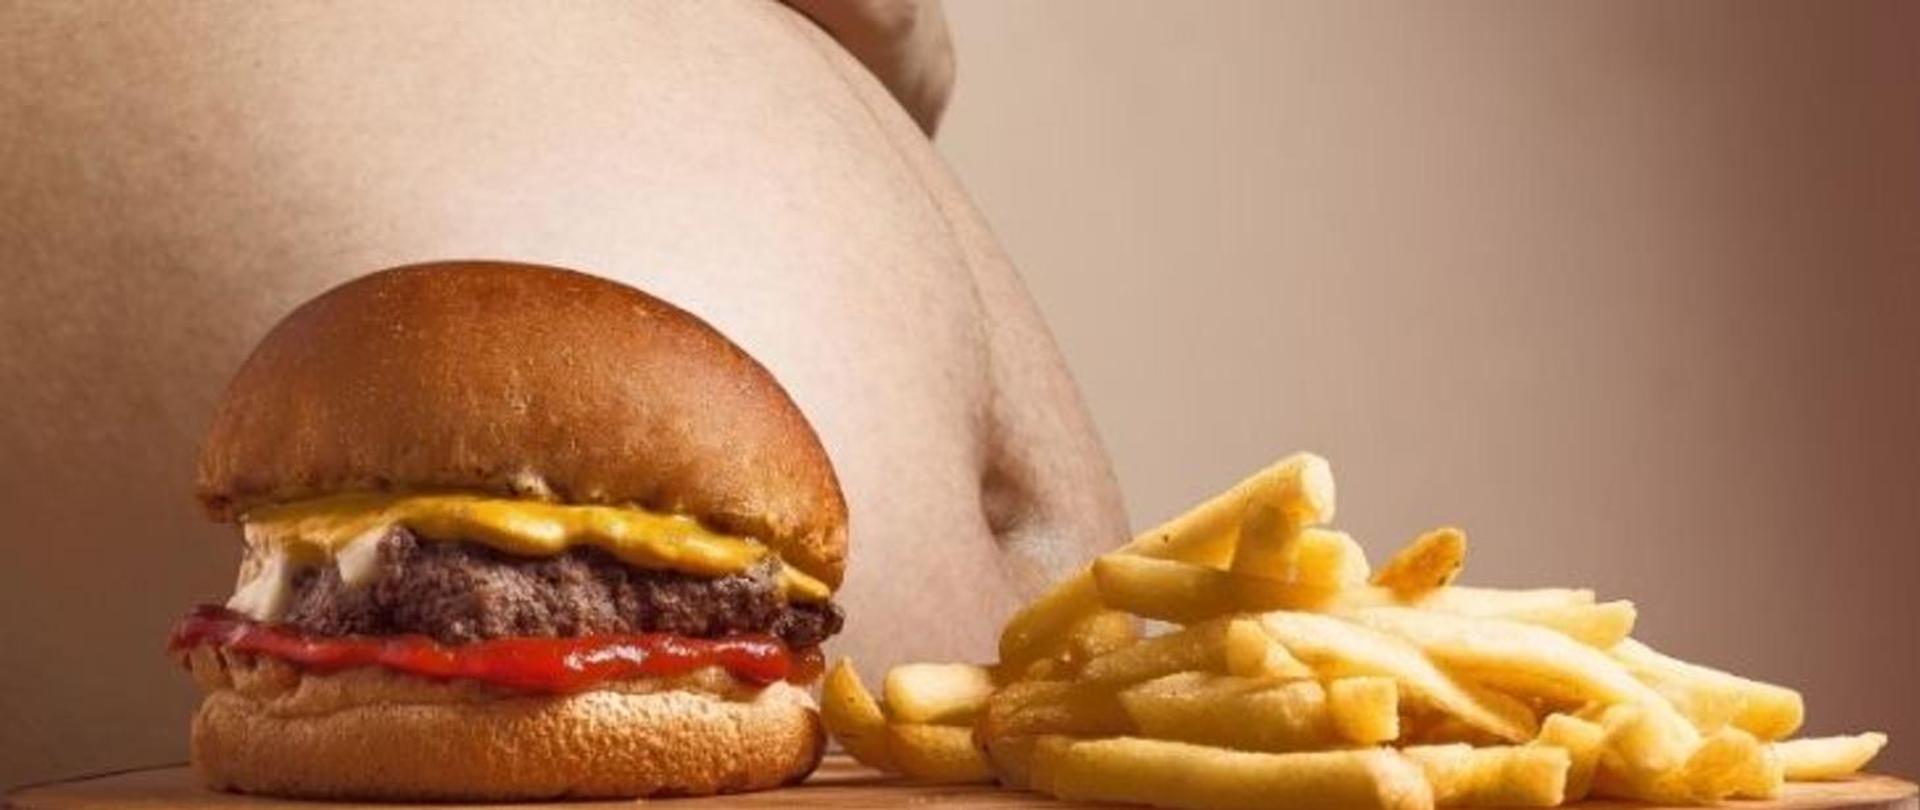 Na pierwszym planie - hamburger i frytki. Na drugim planie brzuch otyłej osoby. 